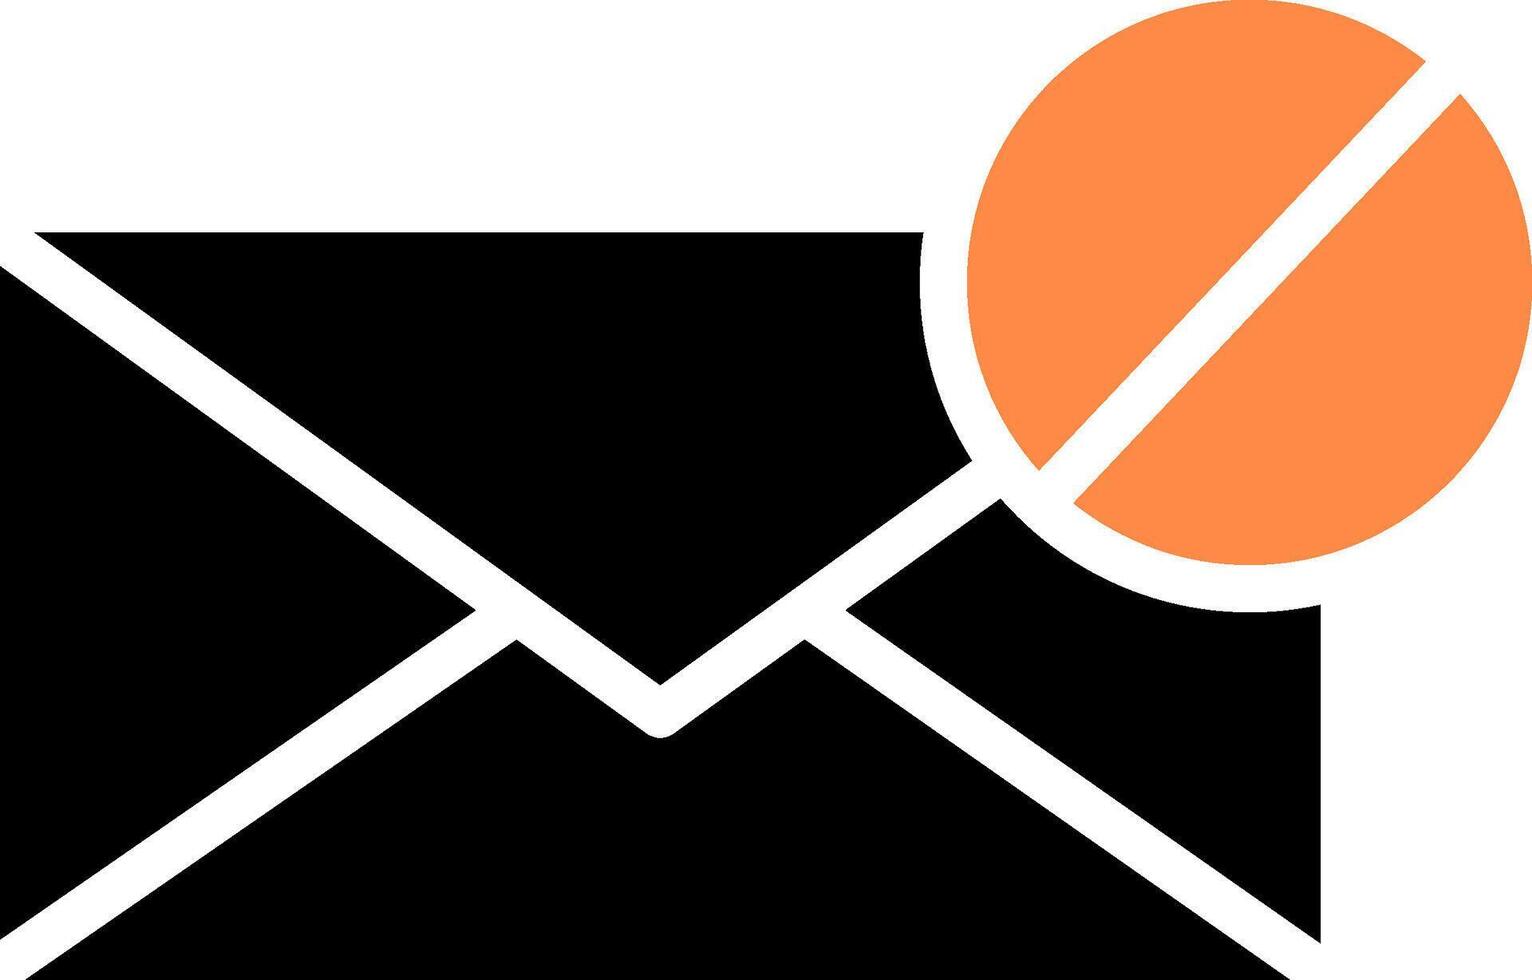 design de ícone criativo de bloco de e-mail vetor